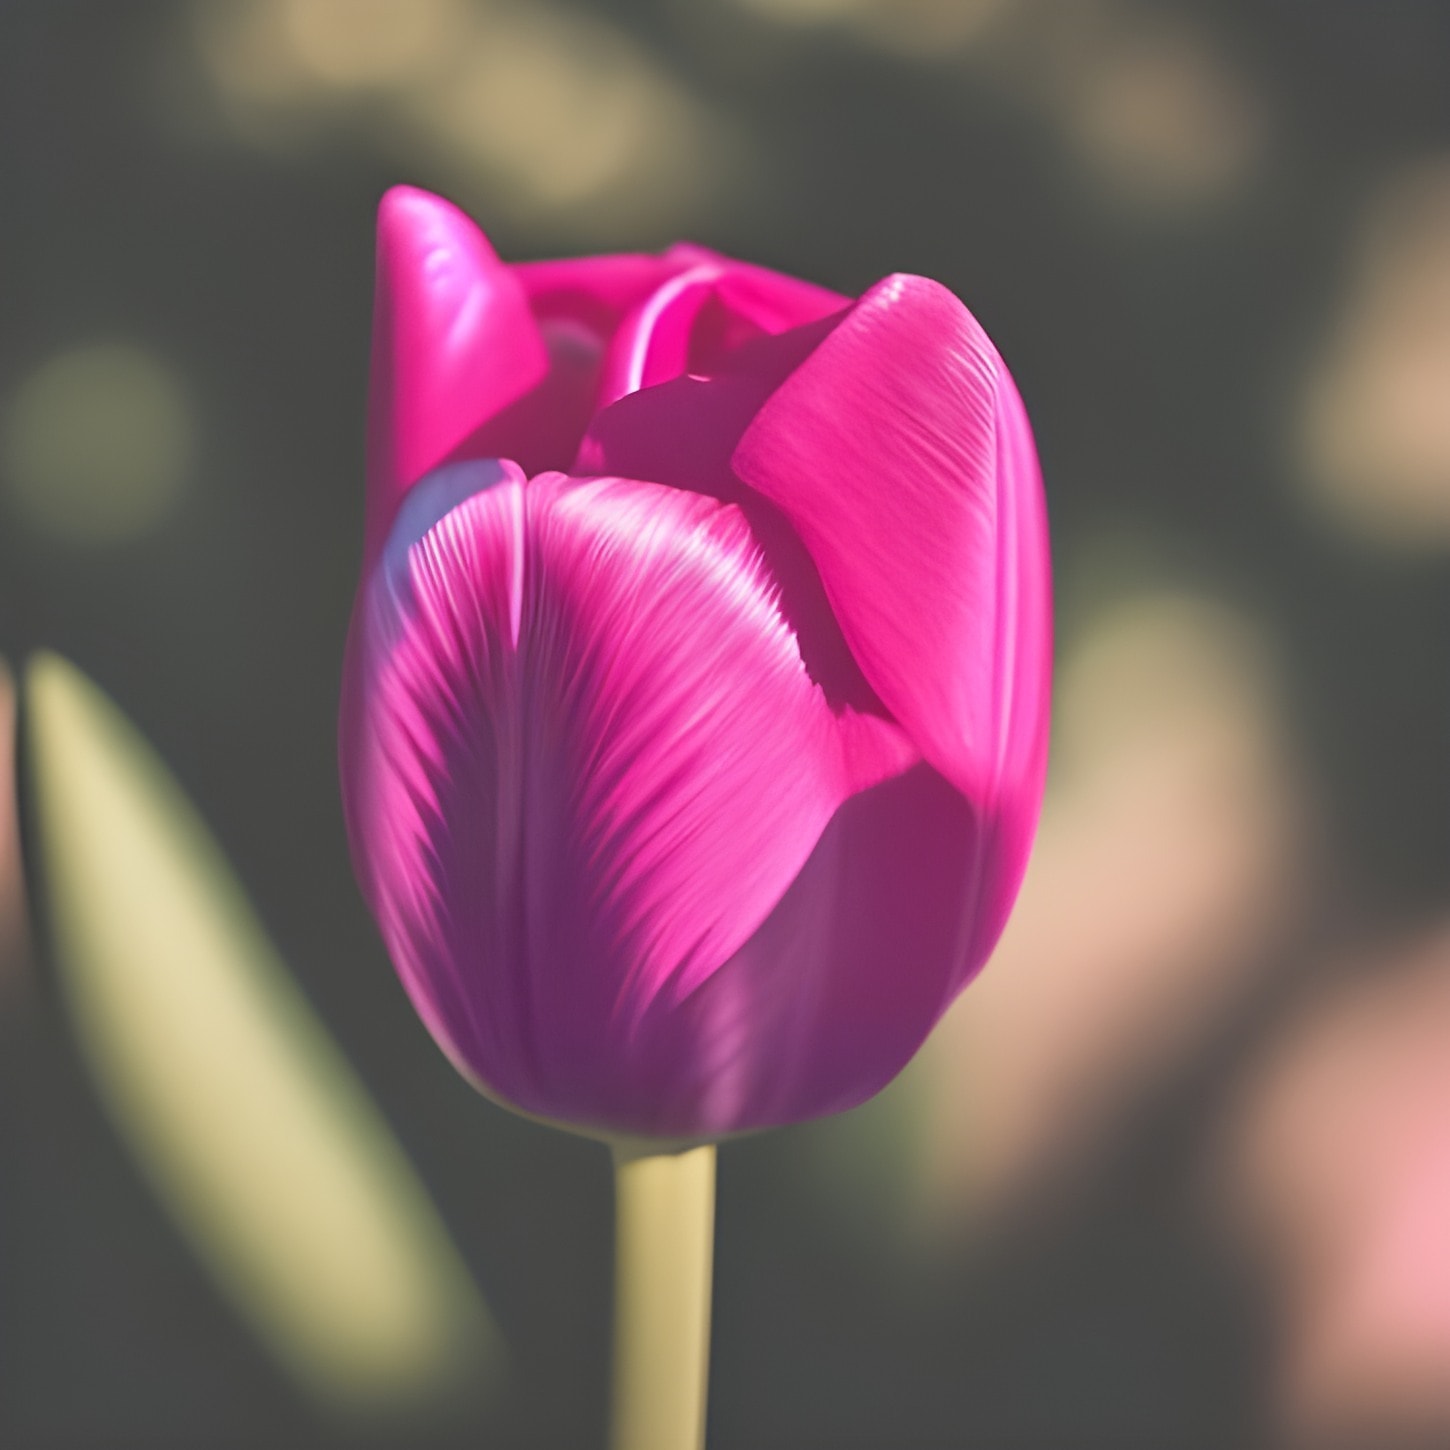 Tulipan, różowawy, zbliżenie, płatki, błyszcząca, kwiat, różowy, kwiat